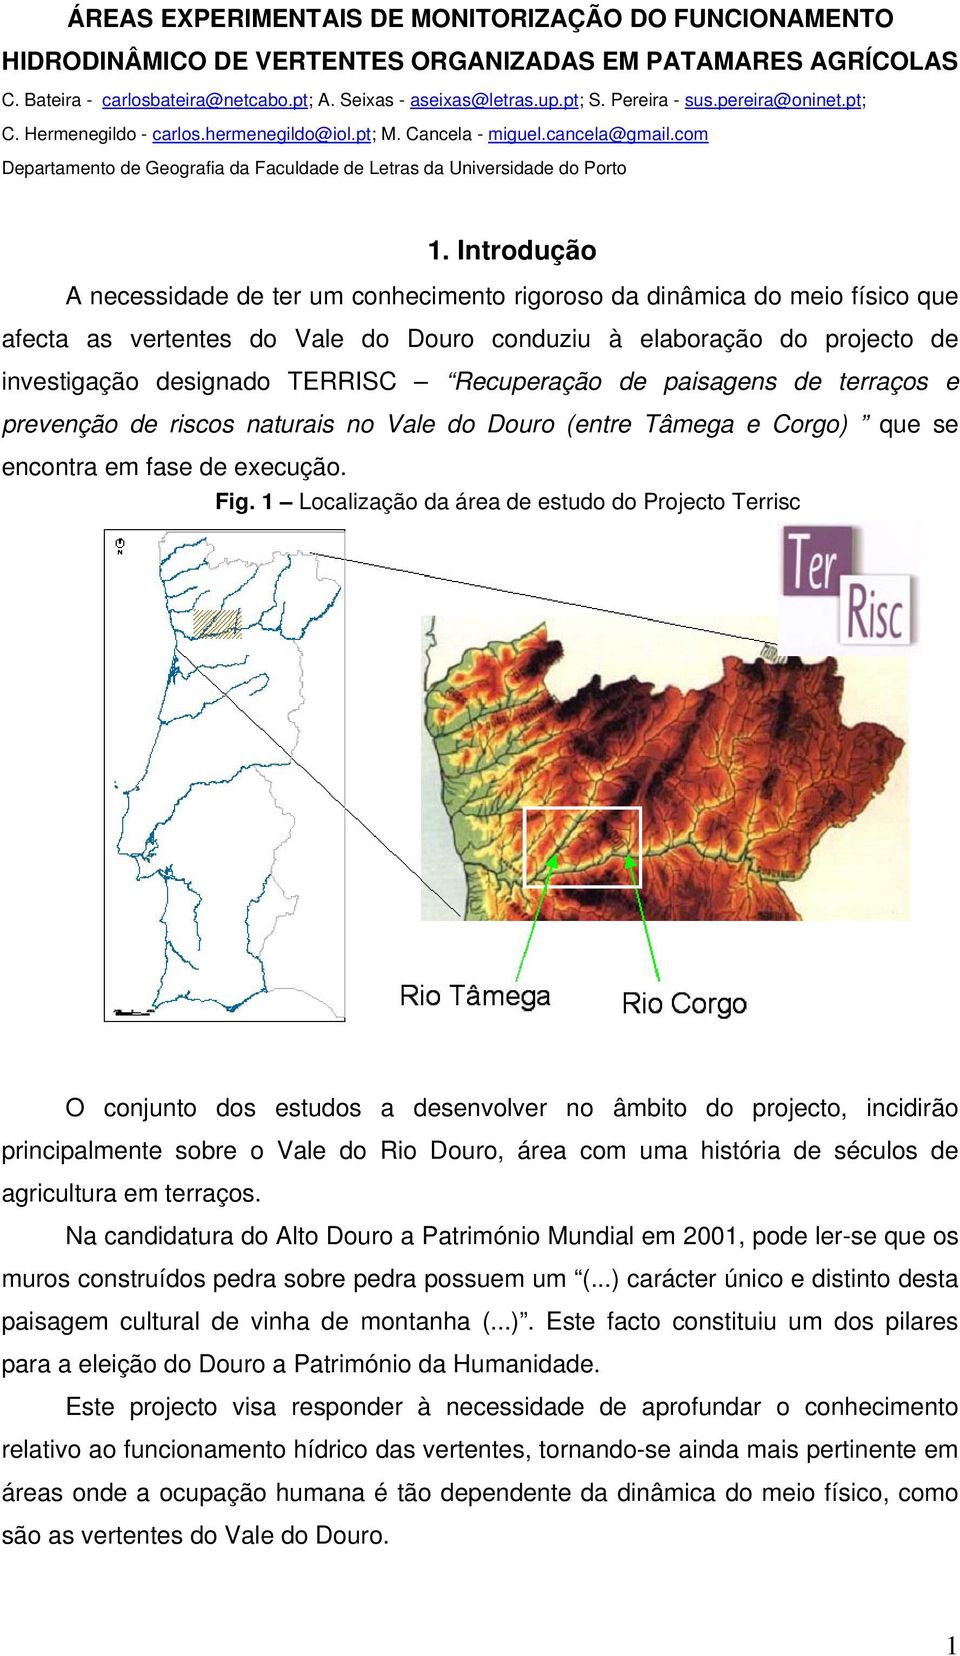 Introdução A necessidade de ter um conhecimento rigoroso da dinâmica do meio físico que afecta as vertentes do Vale do Douro conduziu à elaboração do projecto de investigação designado TERRISC